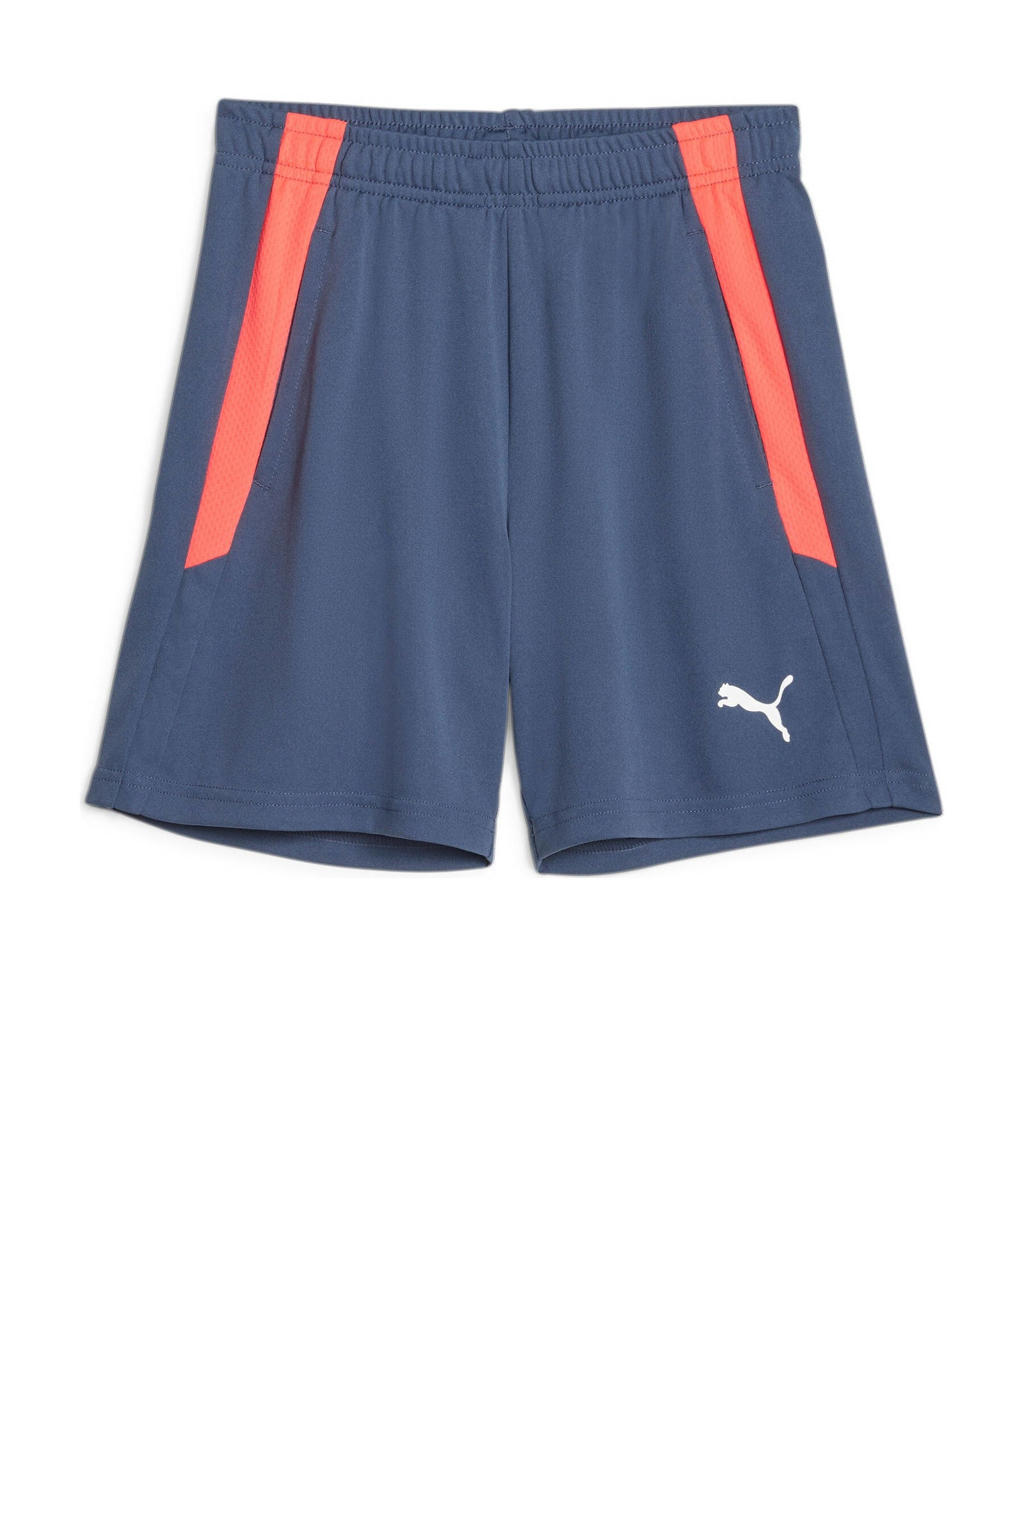 Donkerblauw en rode jongens en meisjes Puma voetbalshort van gerecycled polyester met regular fit, elastische tailleband met koord en logo dessin